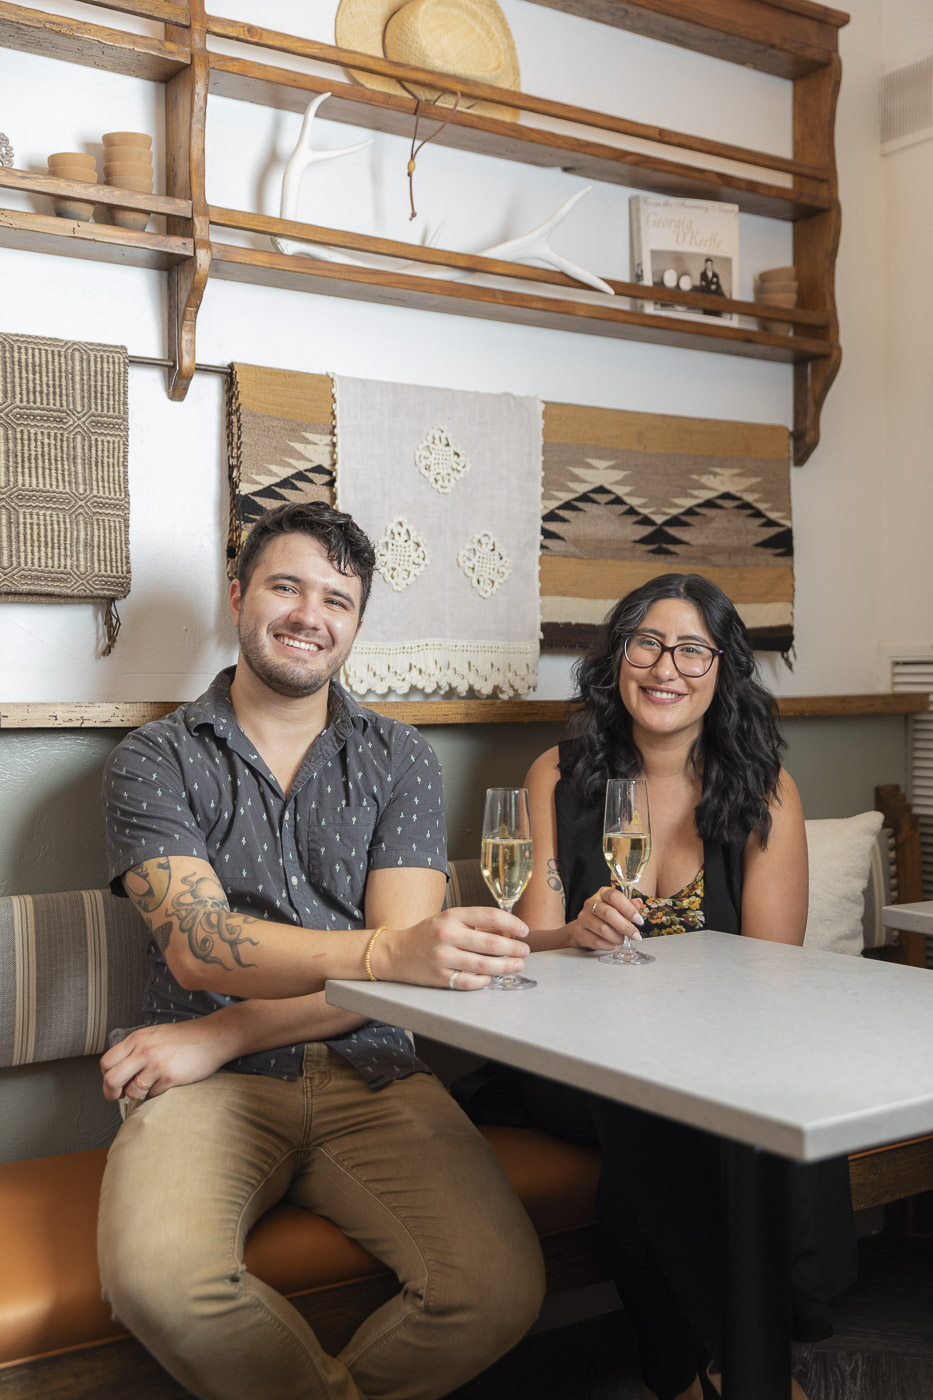 Daniel Gutierrez, tasting room manager for Gruet Winery Santa Fe, and bartender Noemi Leon